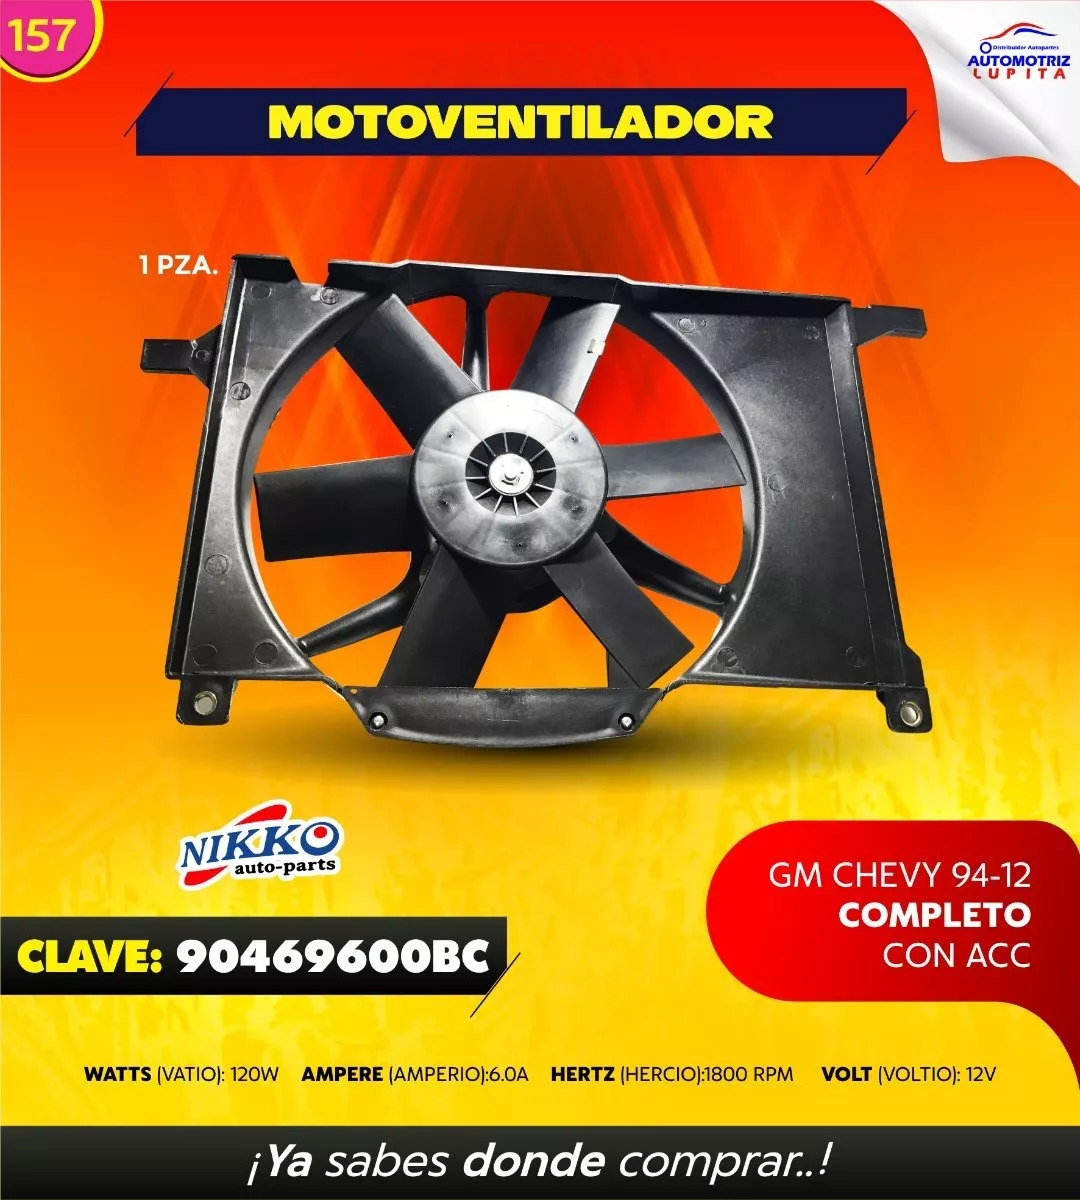 Motoventilador Gm Chevy 94-12 Completo Con Aire Acondiconad 